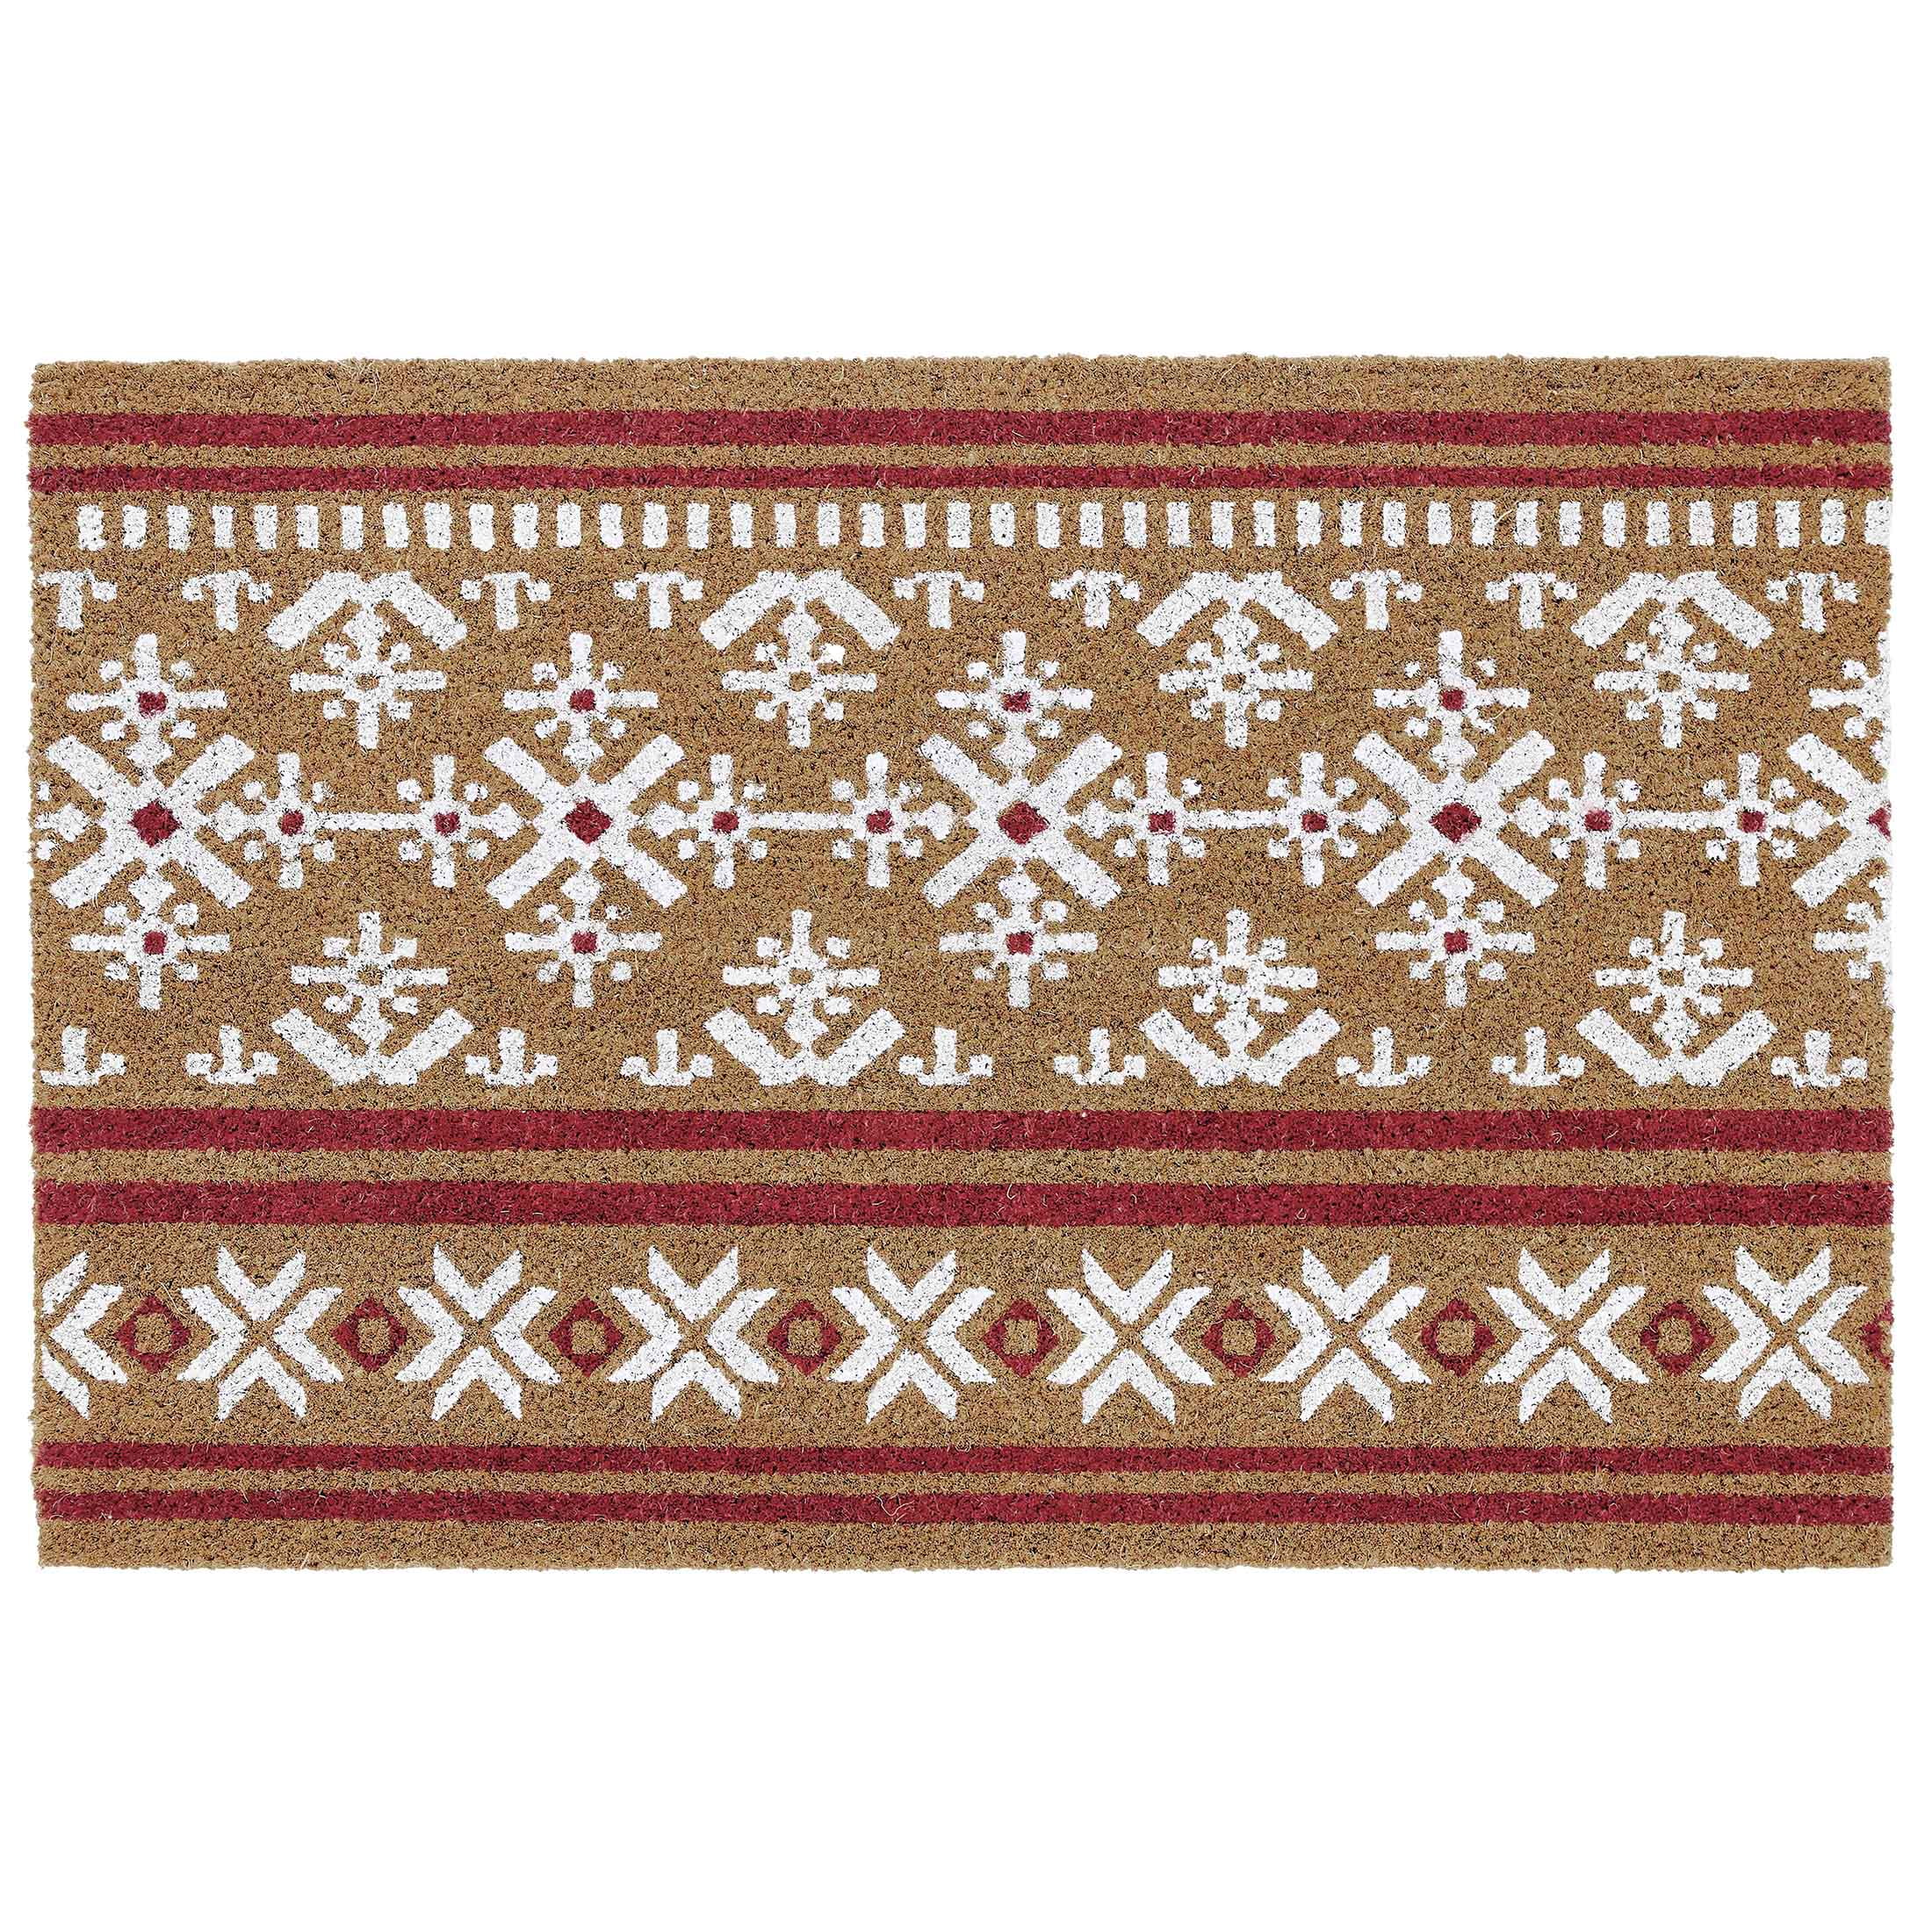  Coir Doormat Natural Fade - Vinyl Backed Winter Holiday  Christmas Door Carpet 16x24in Snowflake Let It Snow Front Door Welcome Mat  Outdoor / Indoor : Patio, Lawn & Garden